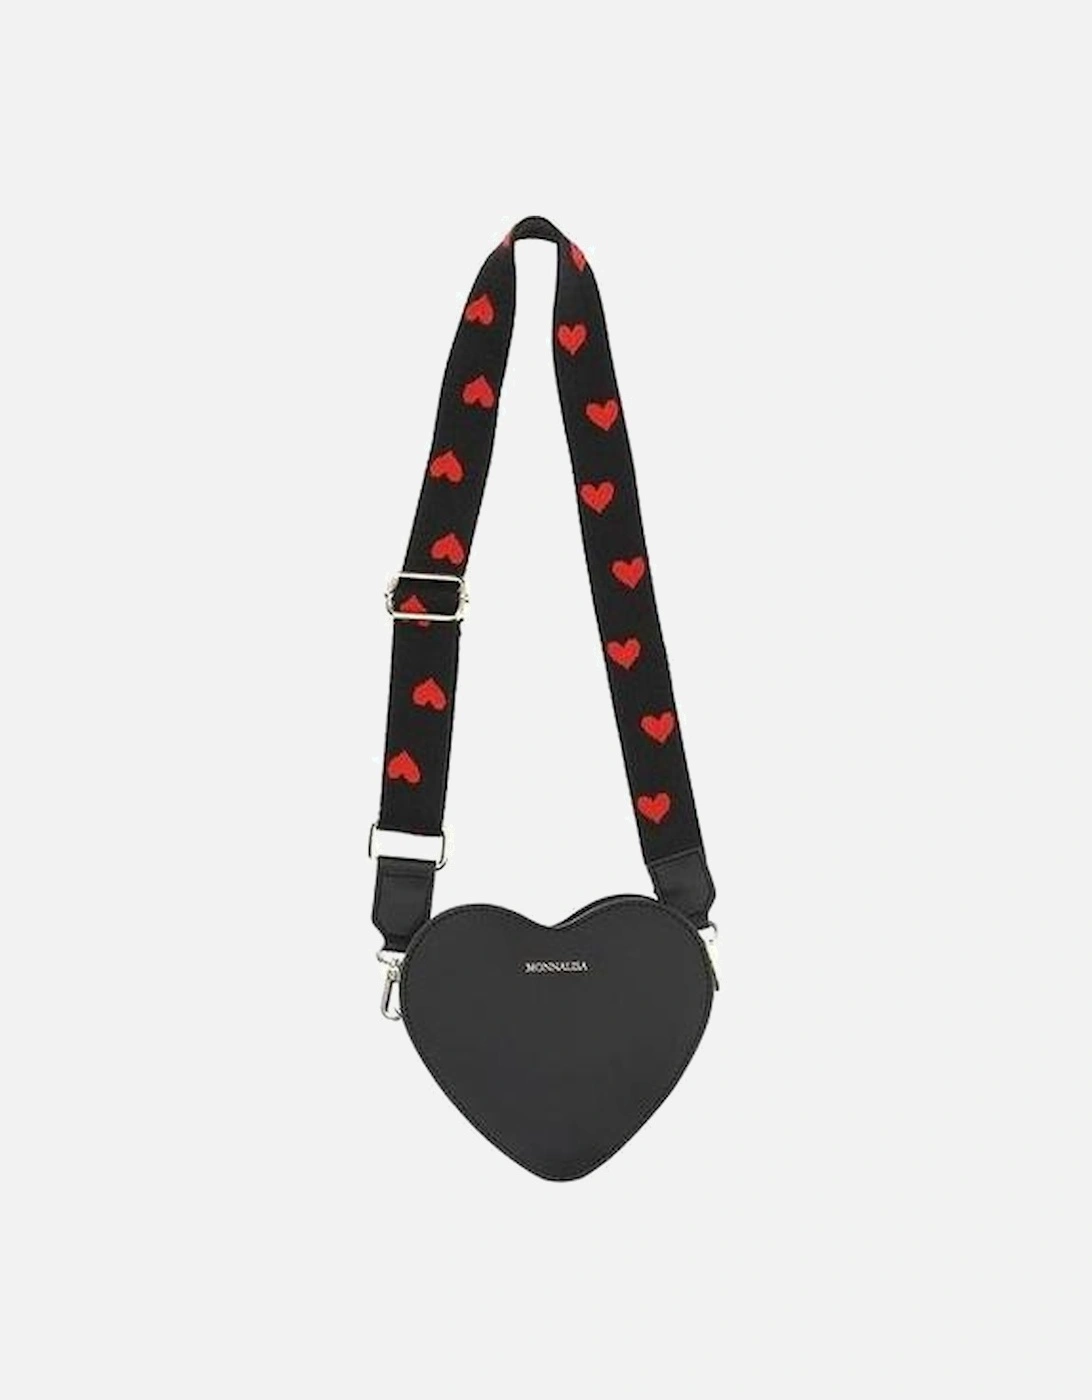 Girls Black & Red Heart Bag, 4 of 3